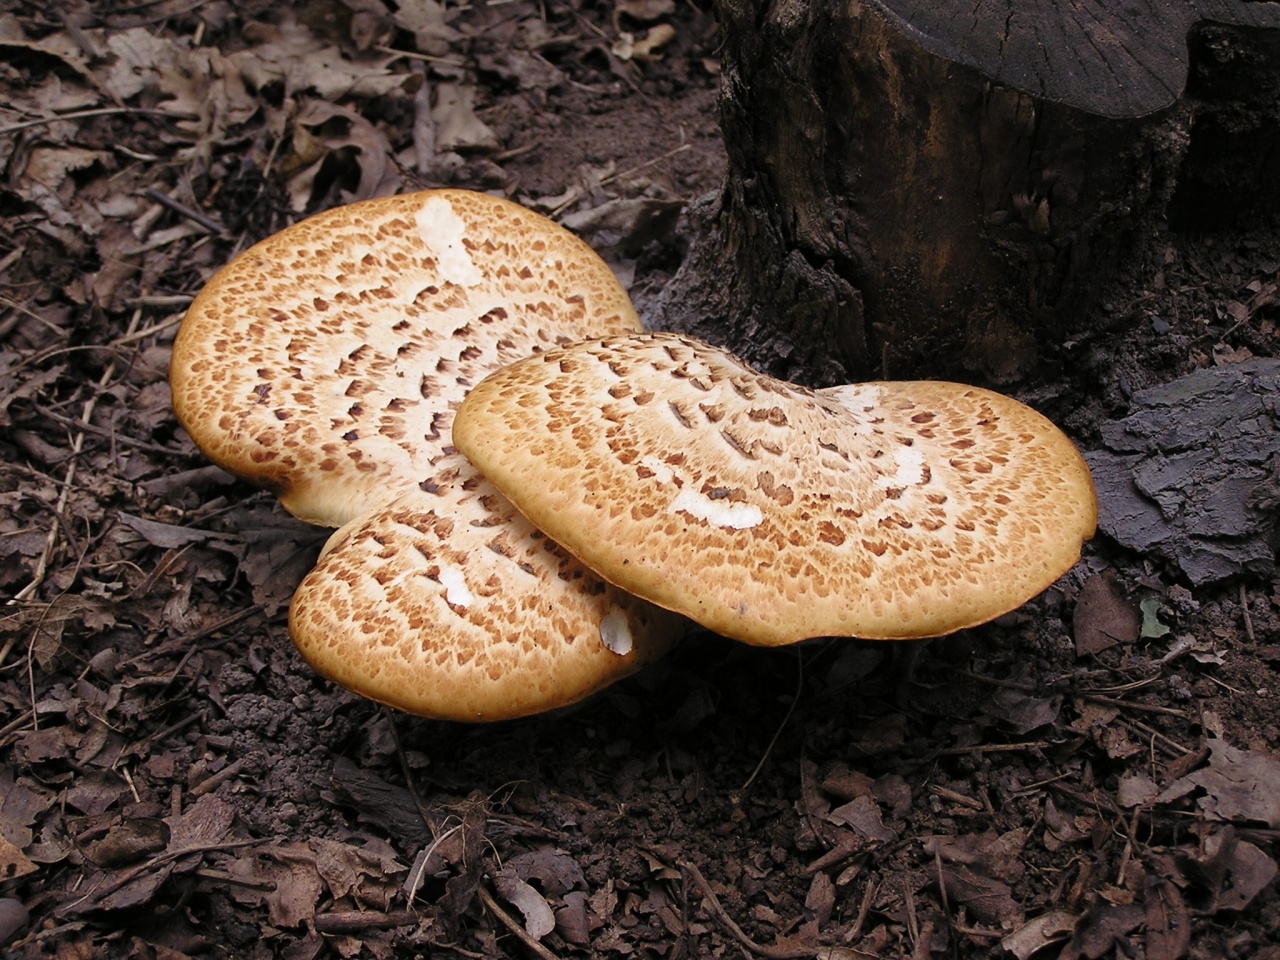 грибы растущие на деревьях съедобные фото